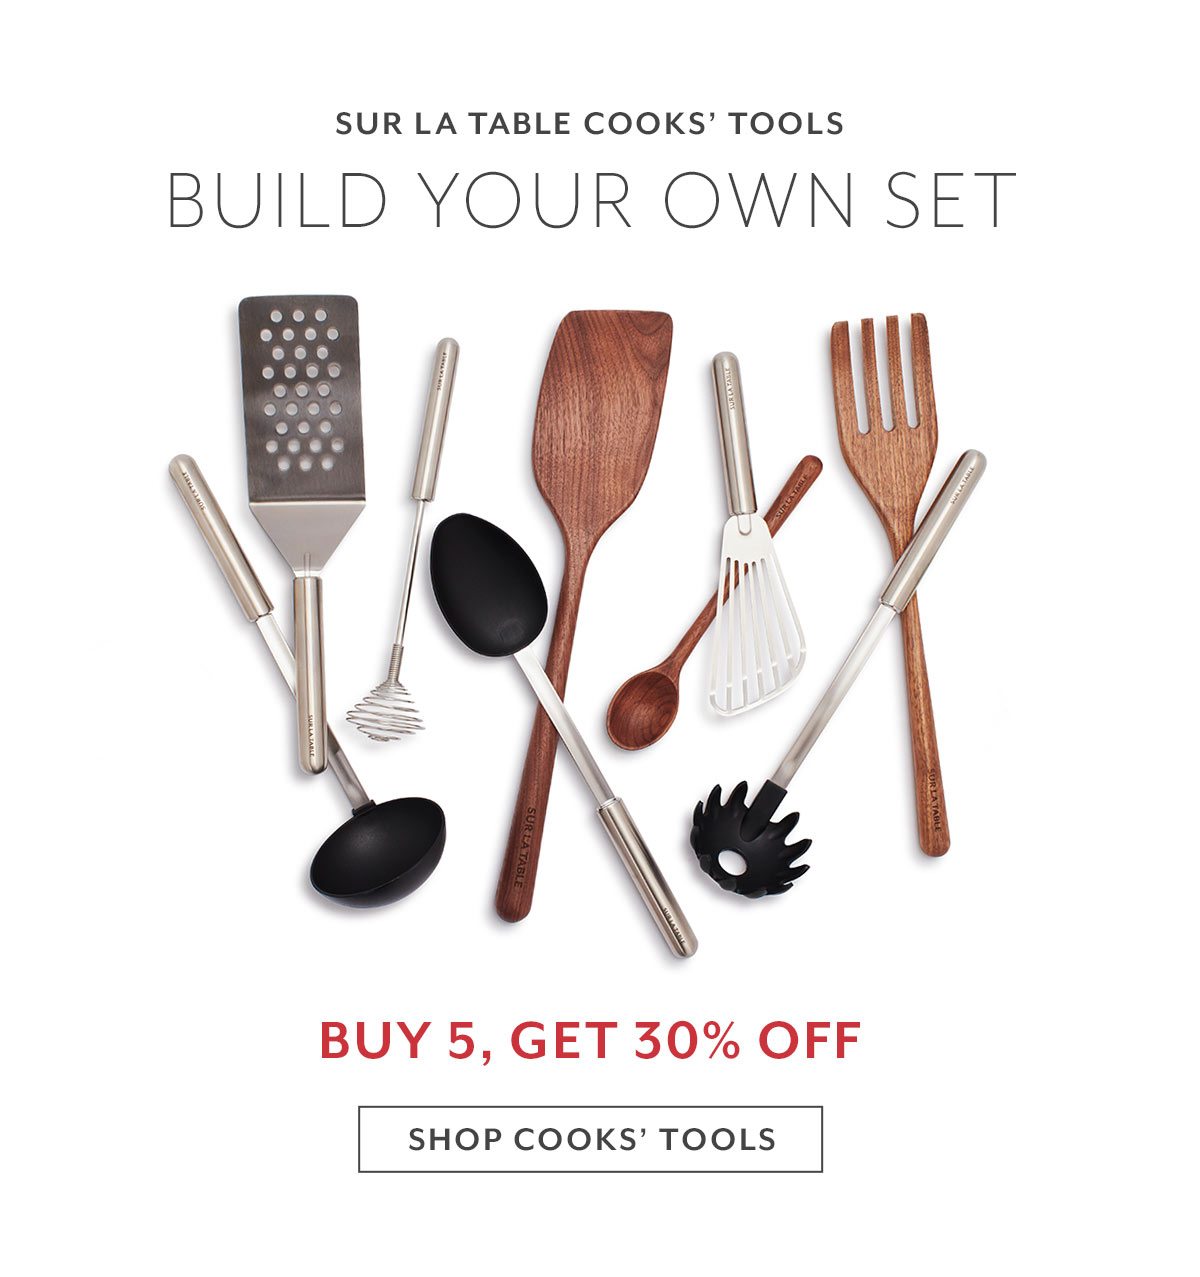 Sur La Table Cooks' Tools